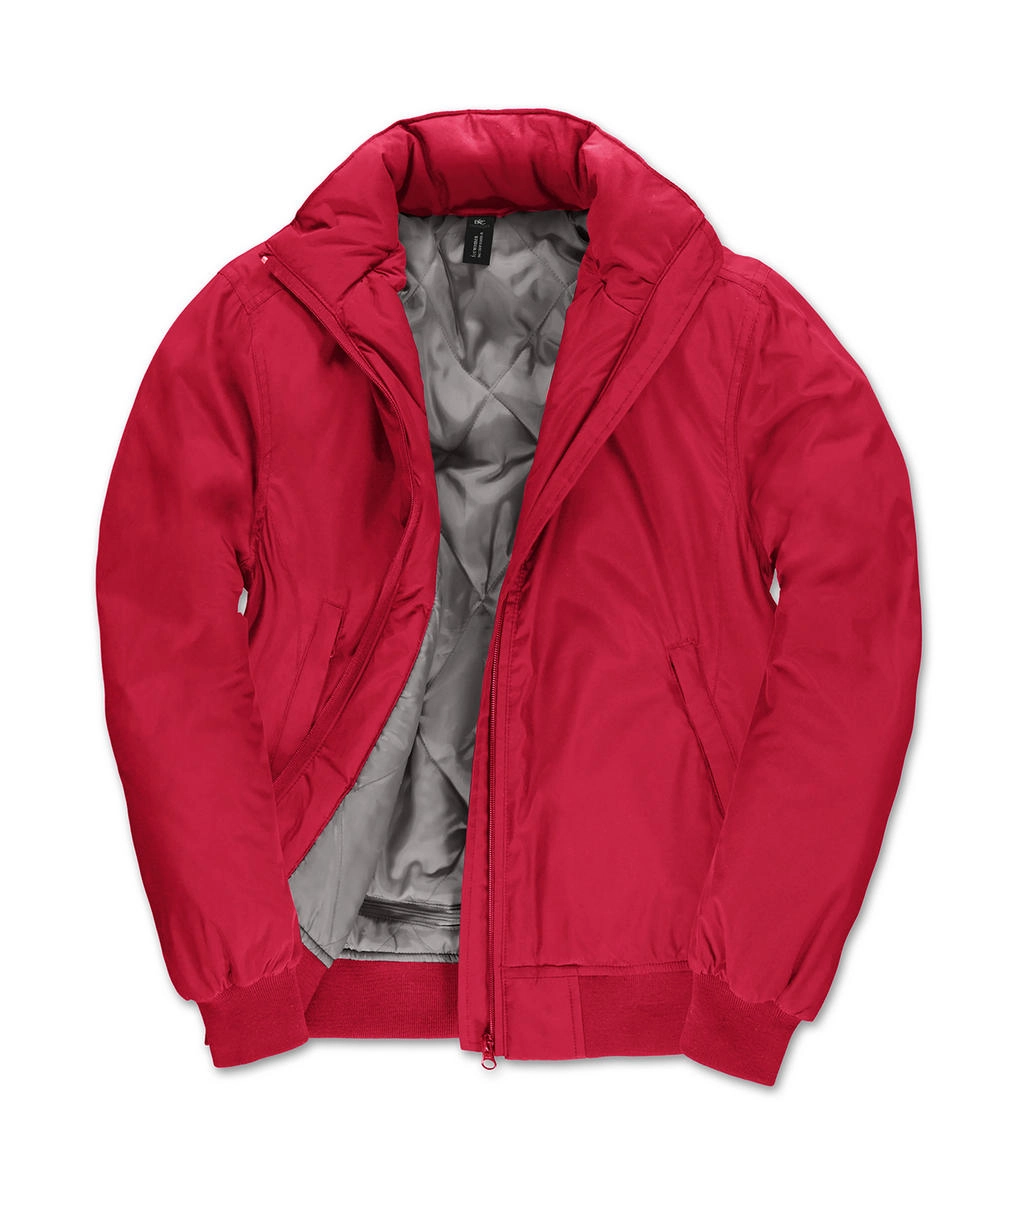 Crew Bomber/women Jacket zum Besticken und Bedrucken in der Farbe Red/Warm Grey mit Ihren Logo, Schriftzug oder Motiv.